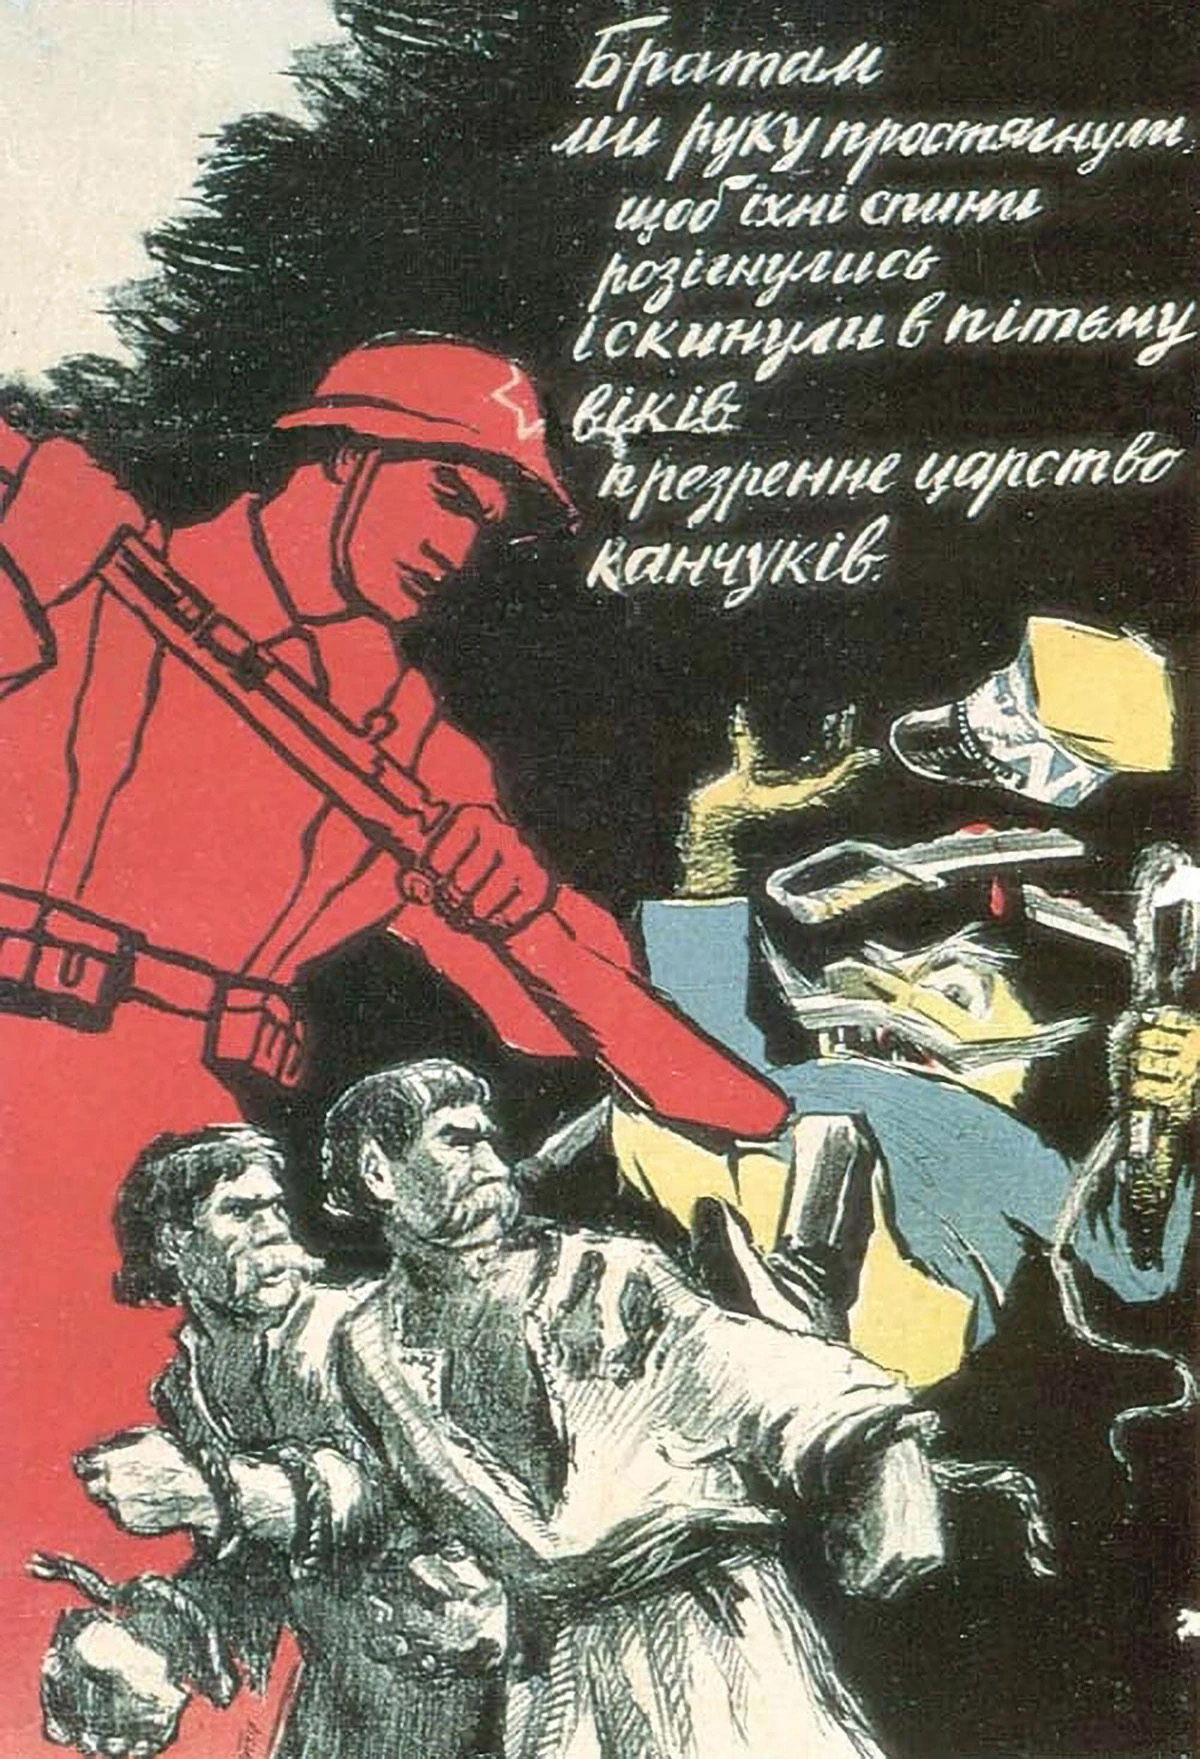 Un cartel propagandístico soviético de la Segunda Guerra Mundial que describe la conquista soviética de las zonas de mayoría étnica polaco-ucraniana como una liberación